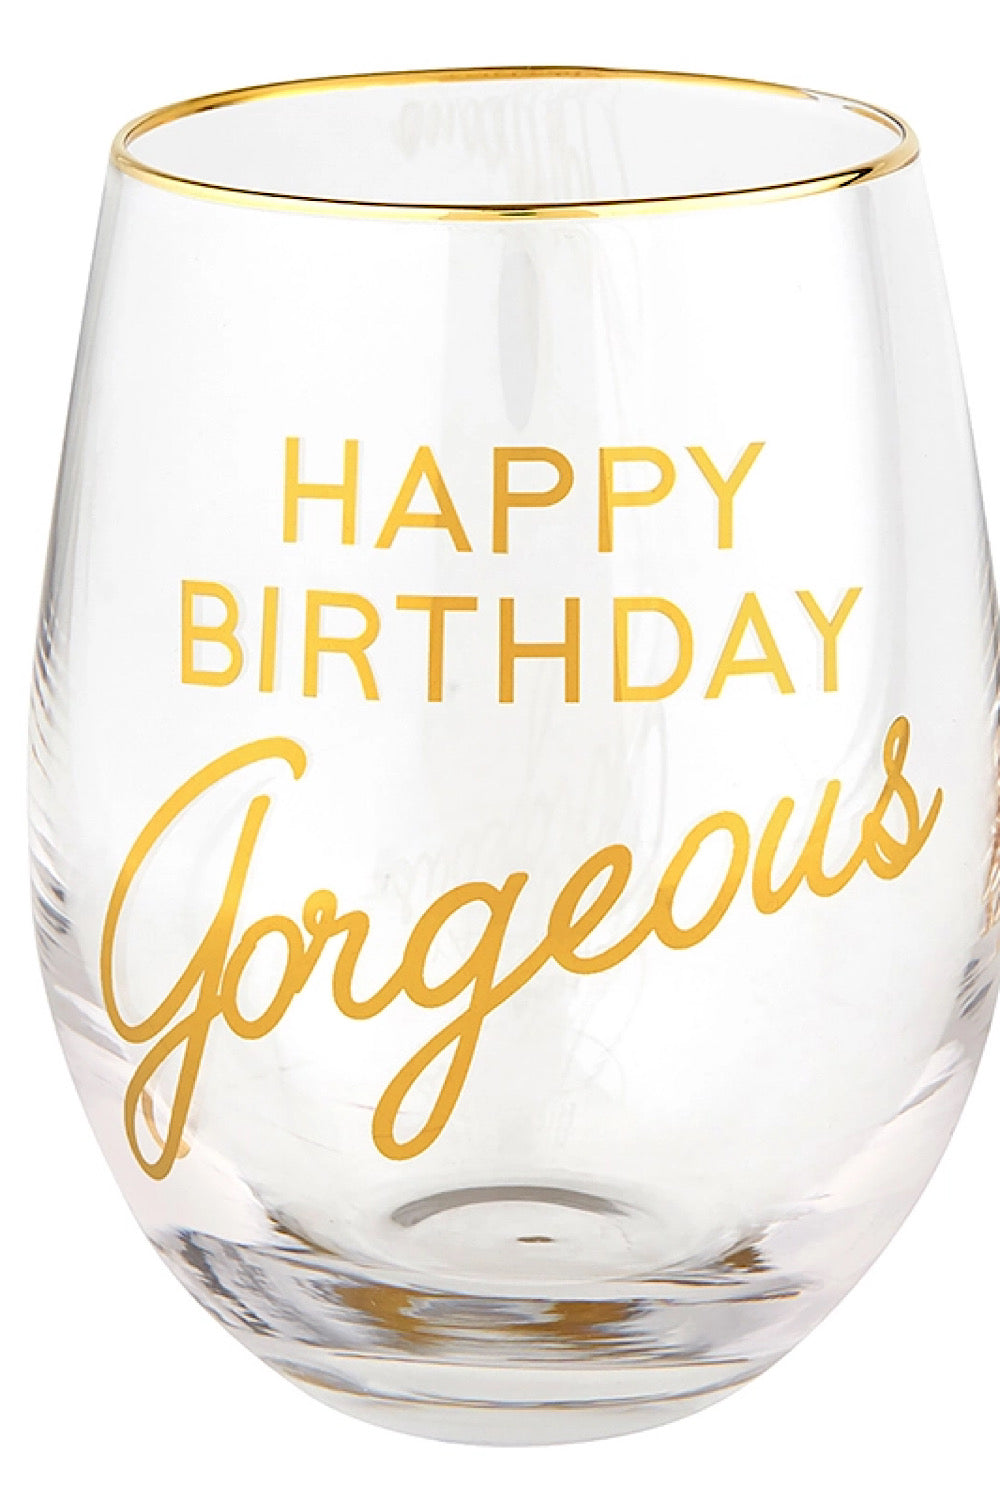 HAPPY BIRTHDAY GORGEOUS WINE GLASS